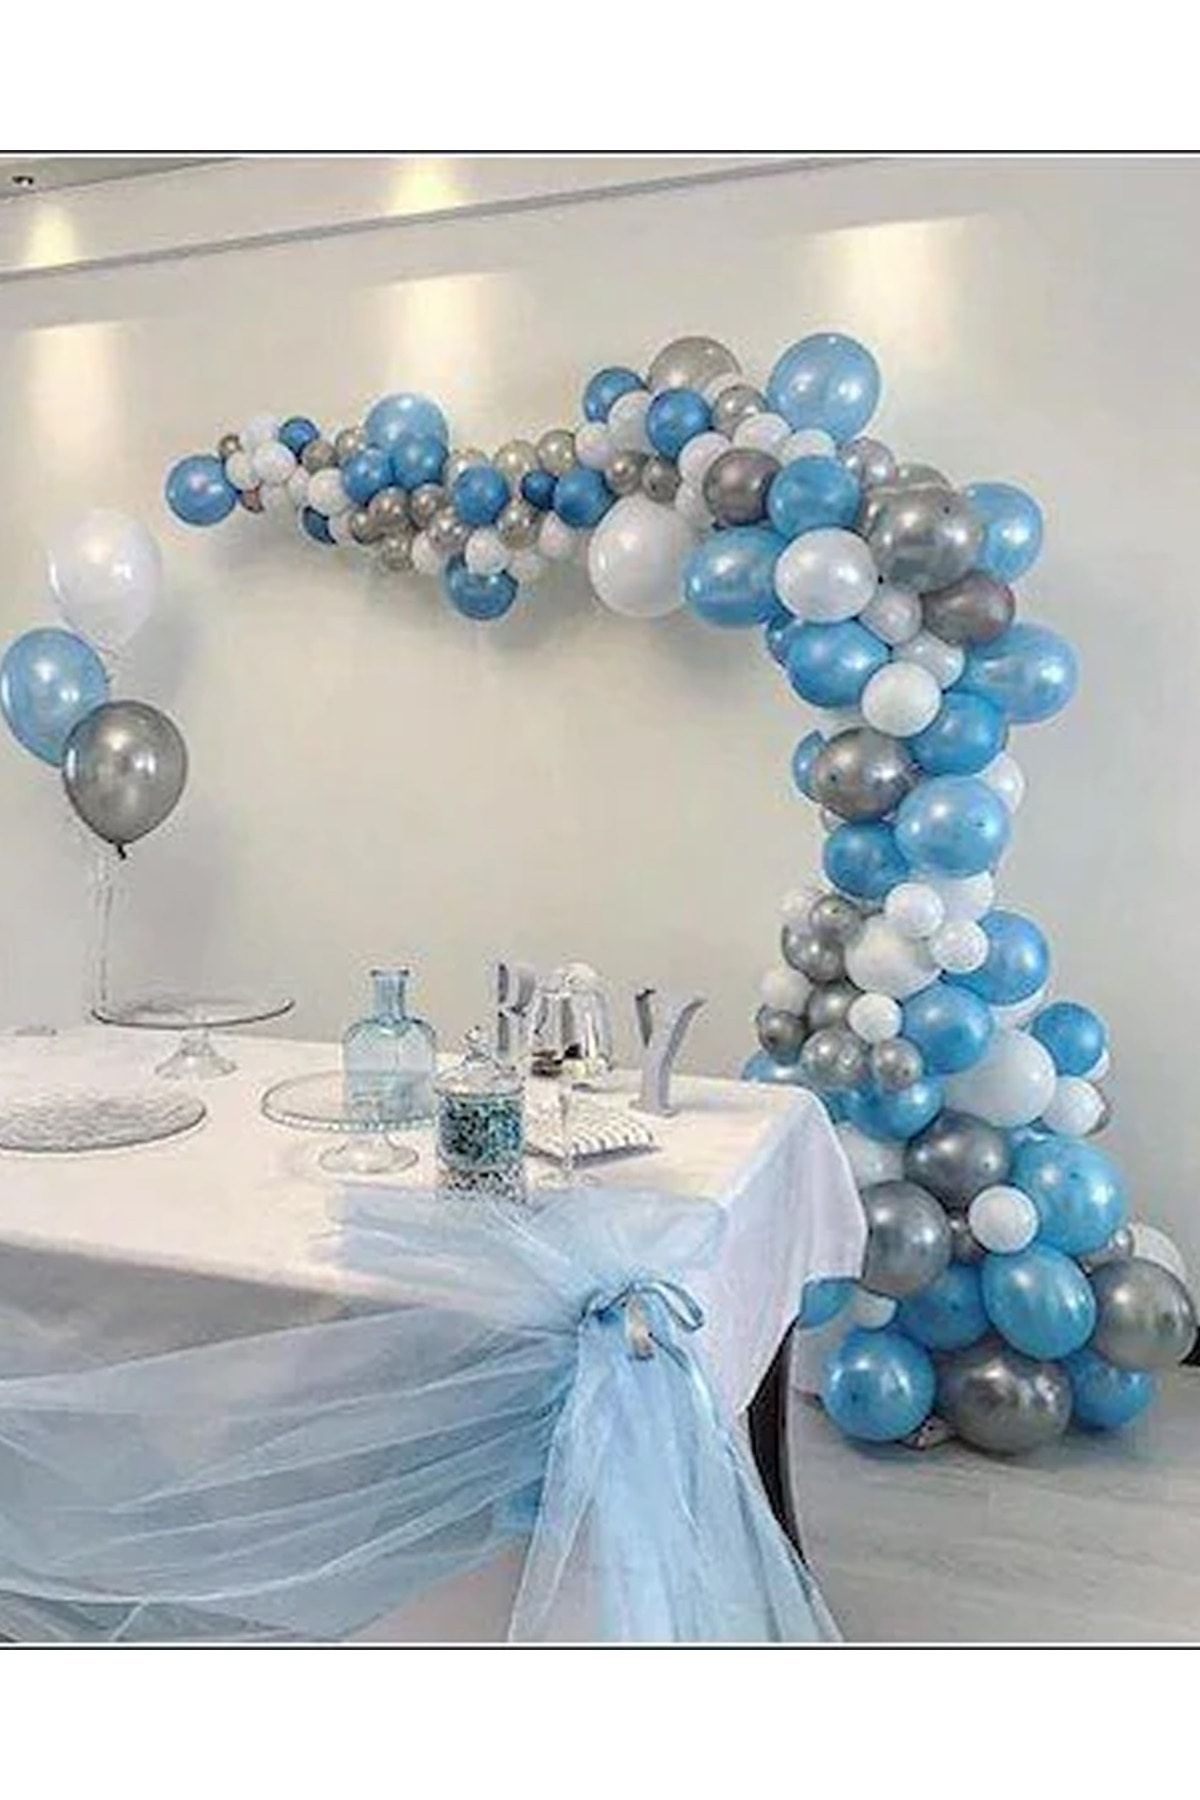 Frozen Partylandtr 75 Adet Metalik Mavi,gümüş,beyaz Balon Ve 5 Metre Balon Zinciri, Balon Yapıştırma Bantı